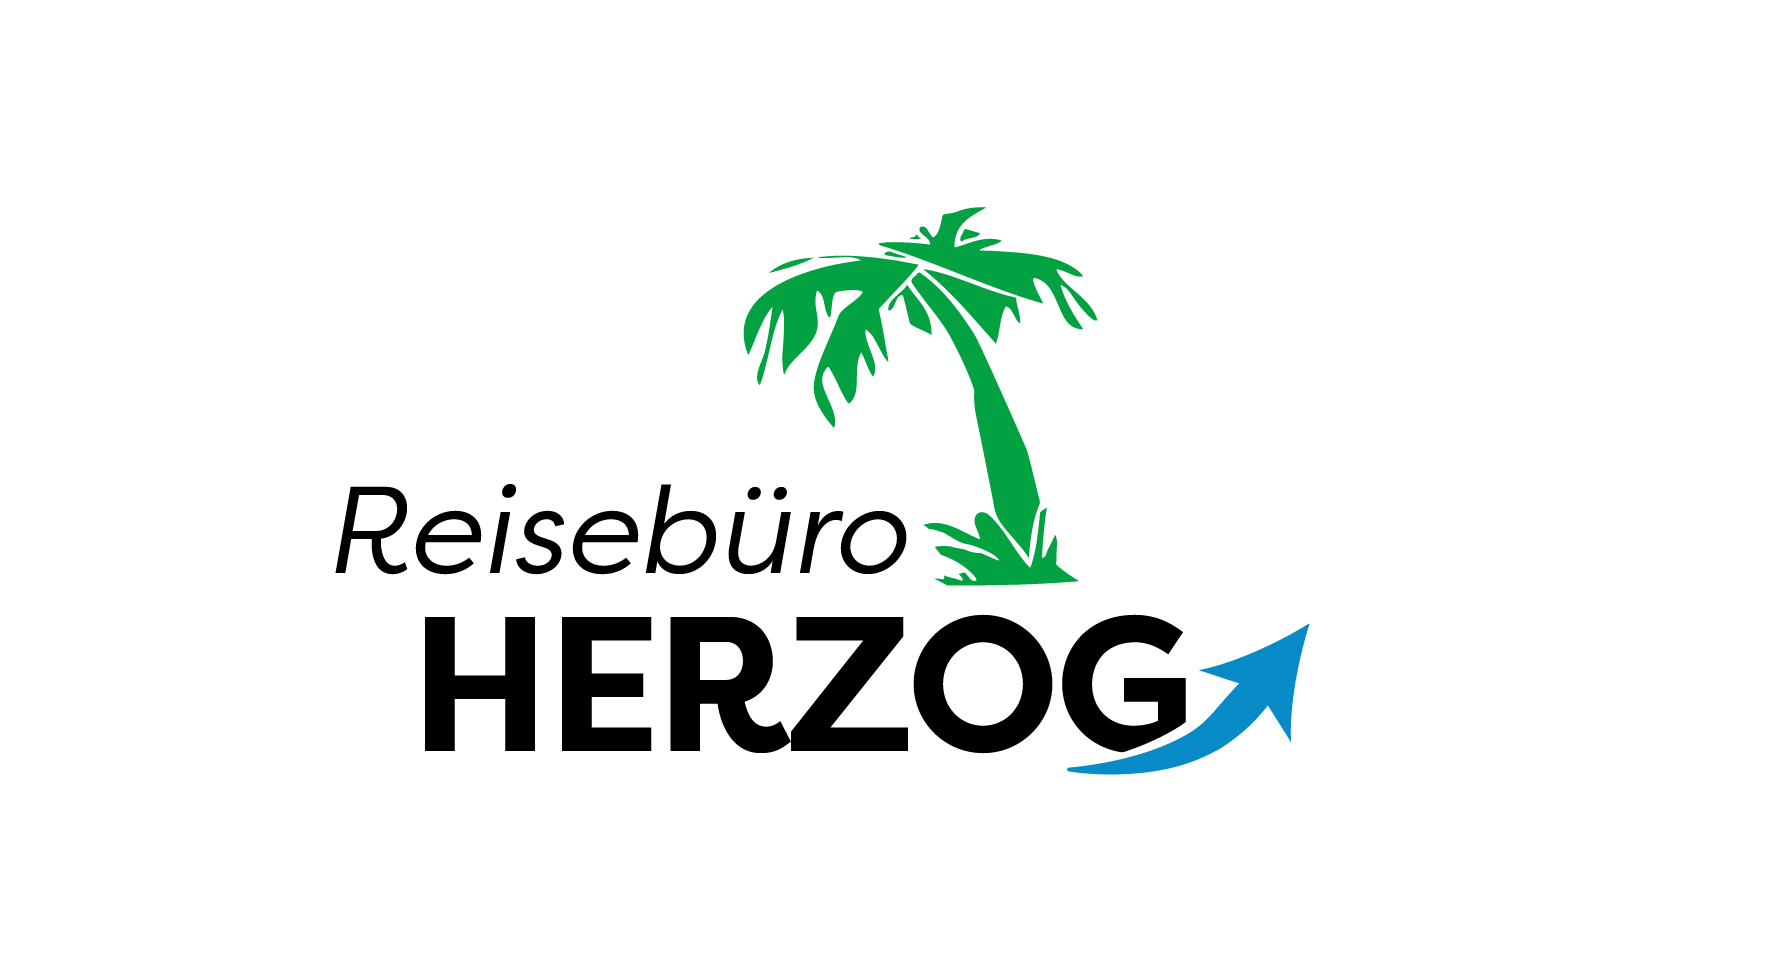 Reisebüro Herzog